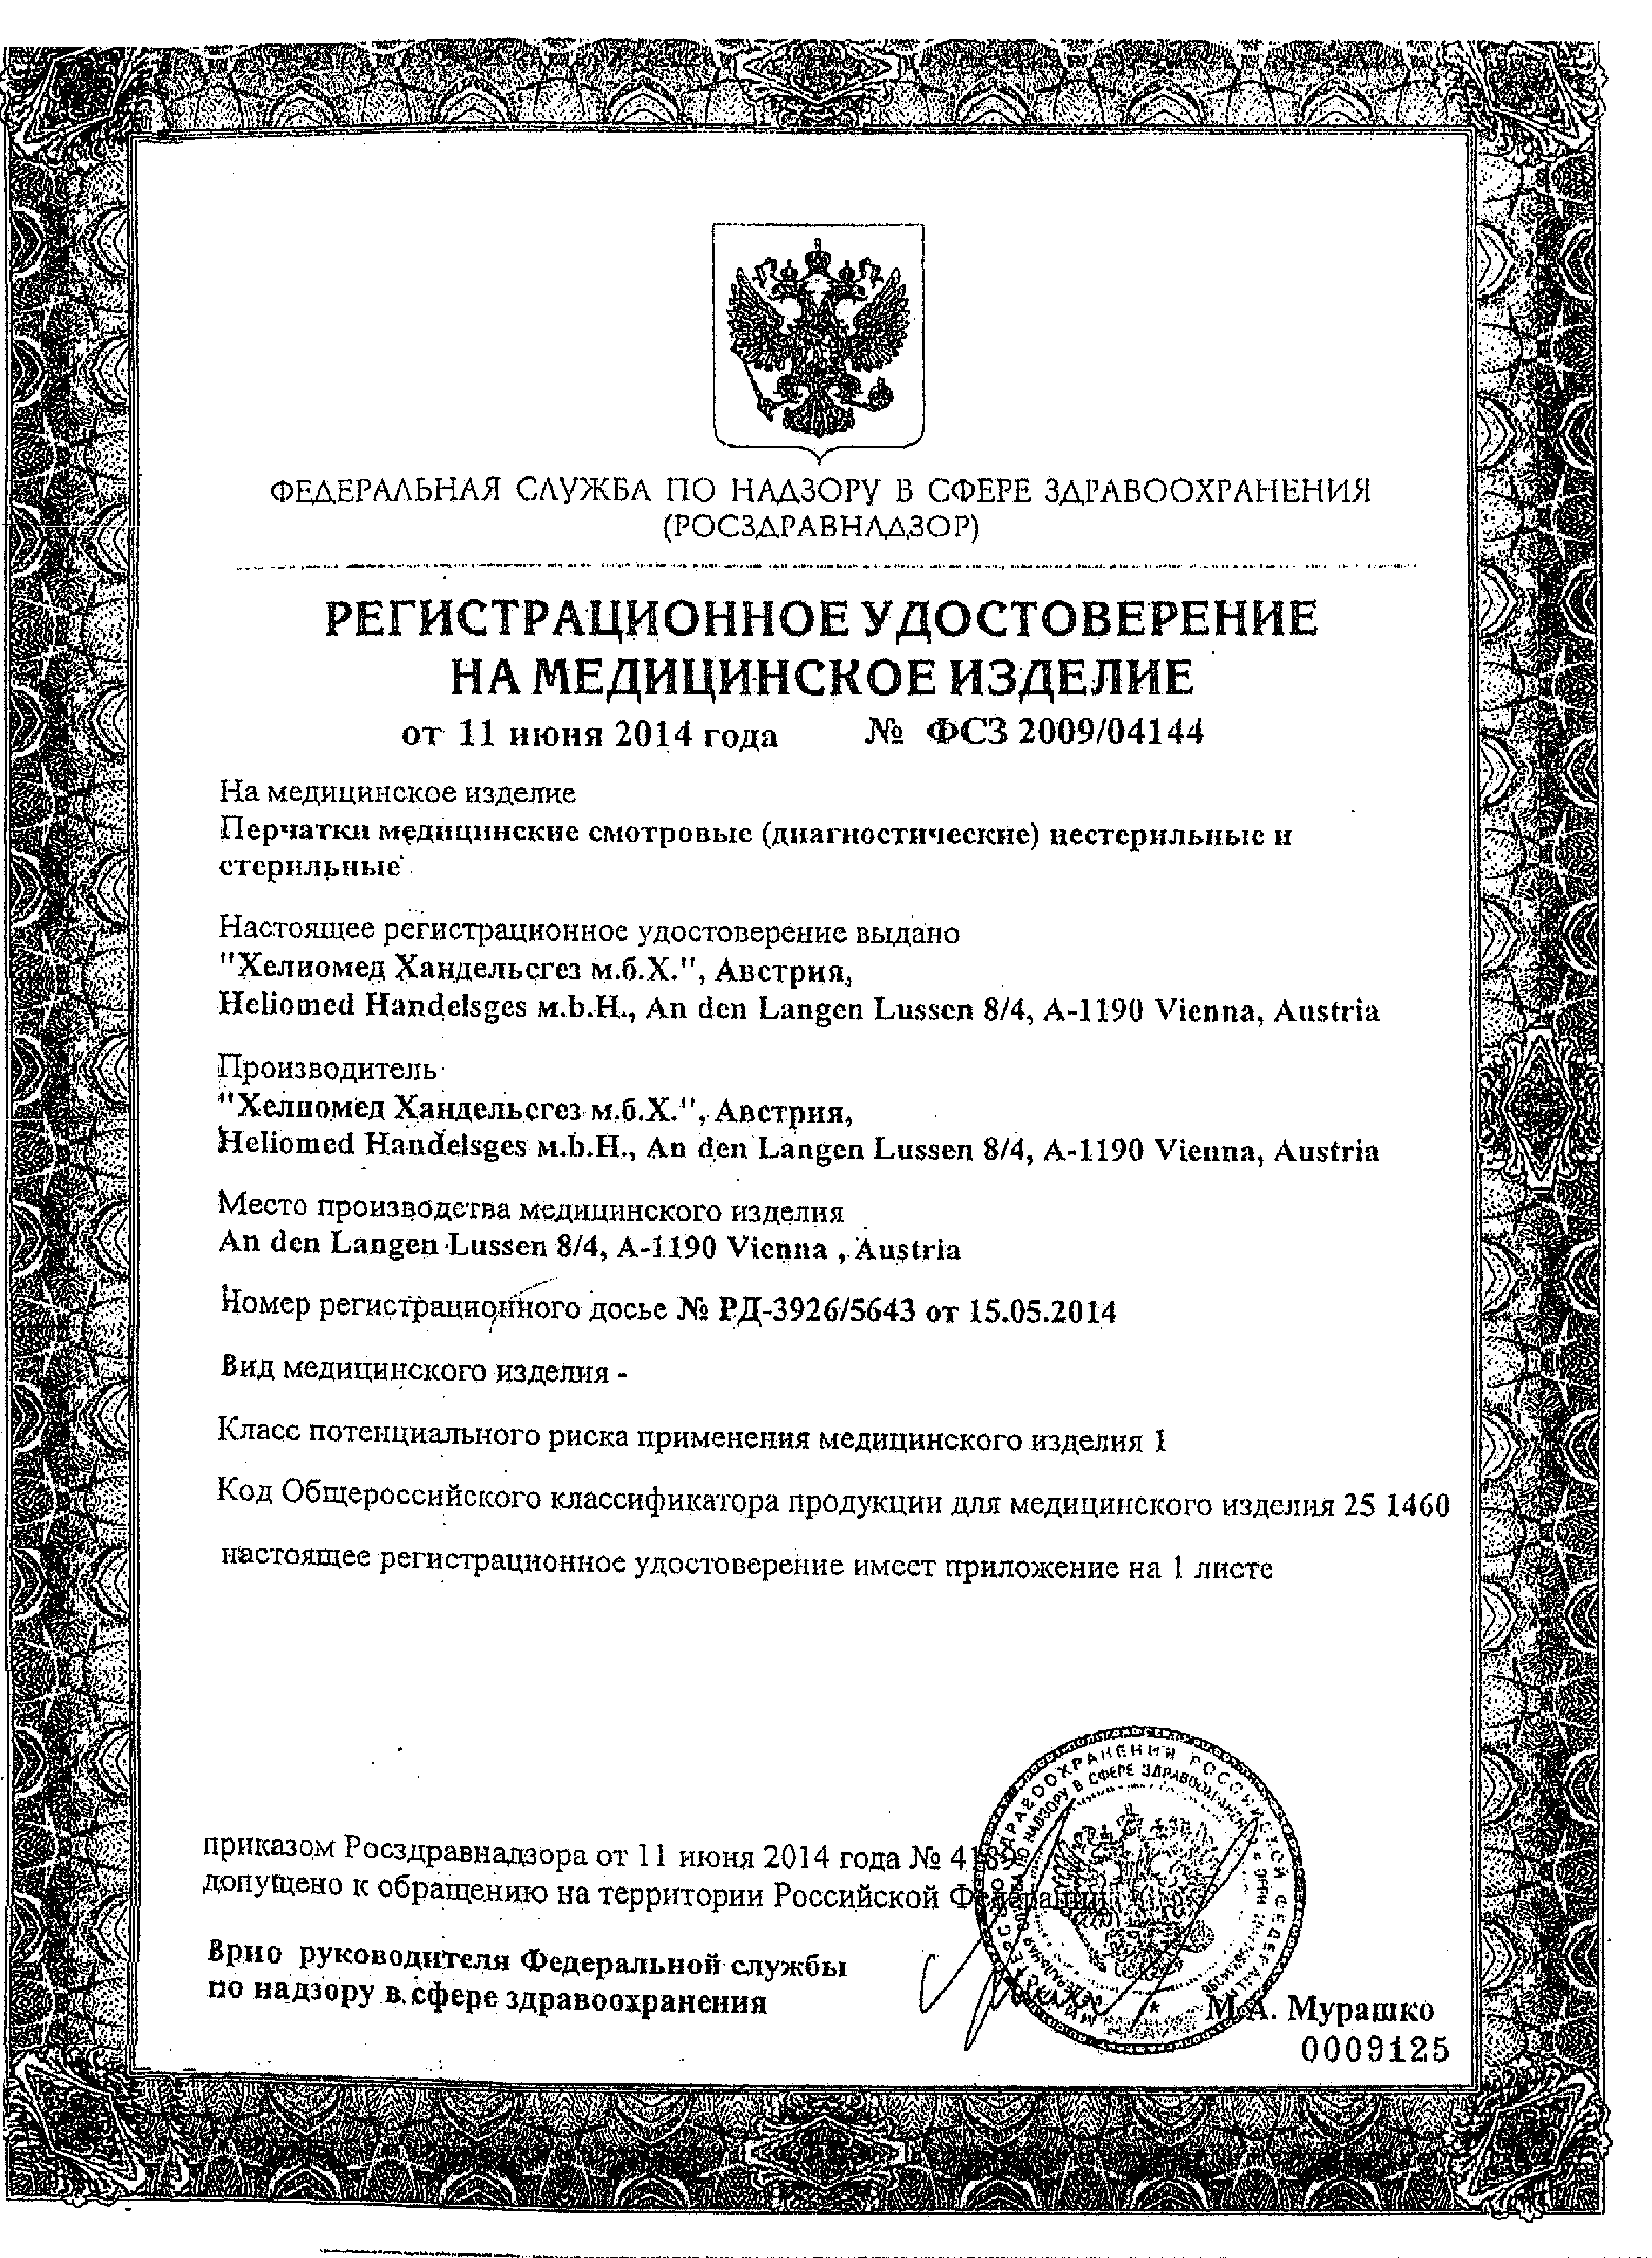 Перчатки смотровые (диагностические) медицинские виниловые неопудренные MANUAL SV609 сертификат